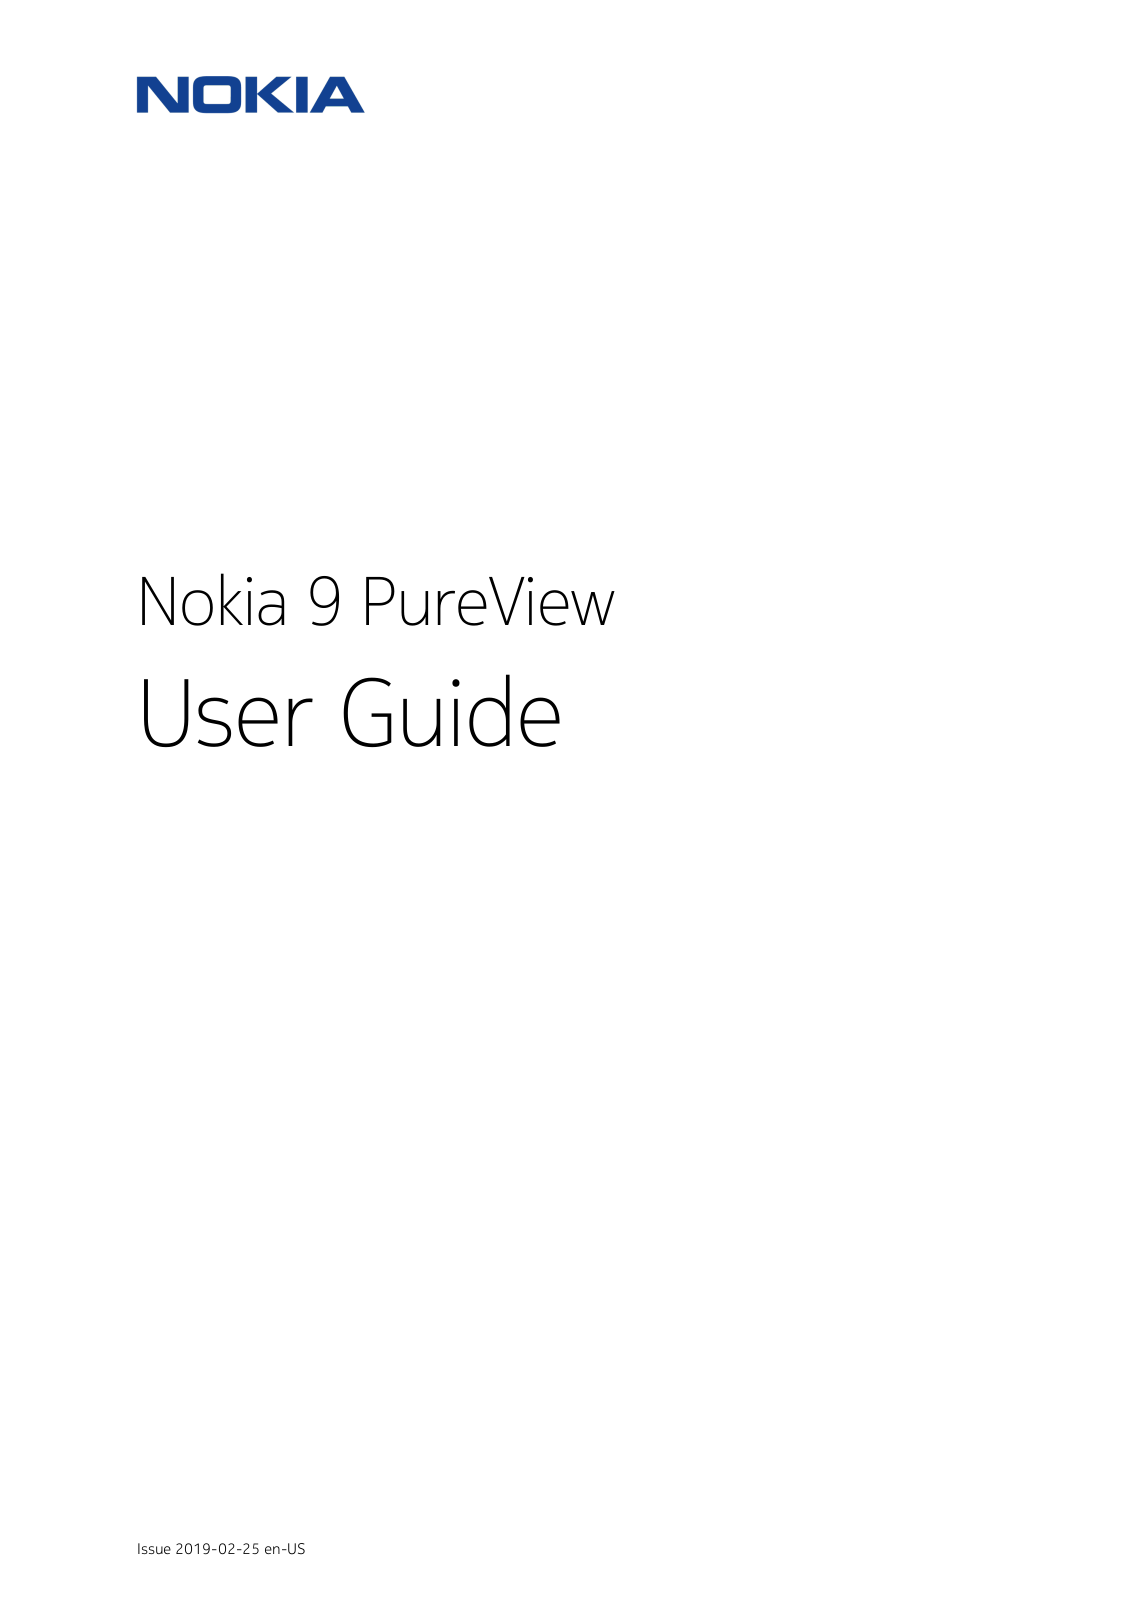 Nokia 9 Pureview User Manual